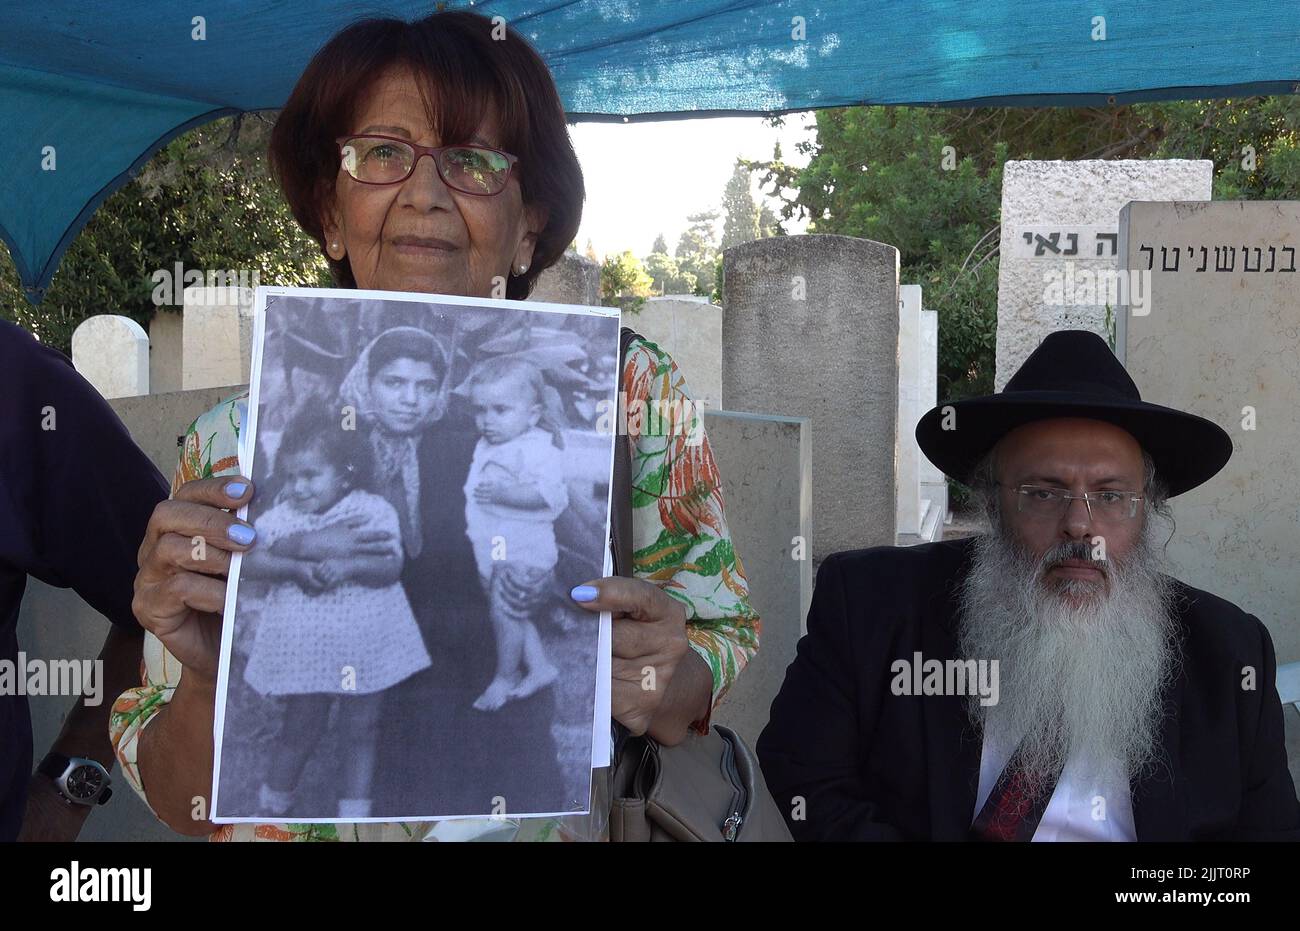 GIVATAYIM, ISRAEL - JULI 27: Ruth Sharabi, die Schwester von Yosef Melamed, einem jemenitischen Kind, das 1949 starb, Zeigt ein Kinderbild, das sie und Yossef mit ihrer Mutter zeigt, wie israelische medizinische Anthropologen das Grab des Kindes exhumieren, um am 27. Juli 2022 in Givatayim, Israel, eine DNA-Probe auf dem Friedhof von Nahalat Yitzhak zu entnehmen. Das Grab wurde geöffnet, um der Familie des Jungen zu beweisen, dass er dort begraben ist und nicht entführt und zur Adoption aufgelegt wurde. In den 1950s Jahren in Israel verschwanden jemenitische Kinder, deren Eltern behaupteten, sie seien „entführt“ worden. Kredit: Eddie Gerald/Alamy Live Nachrichten Stockfoto